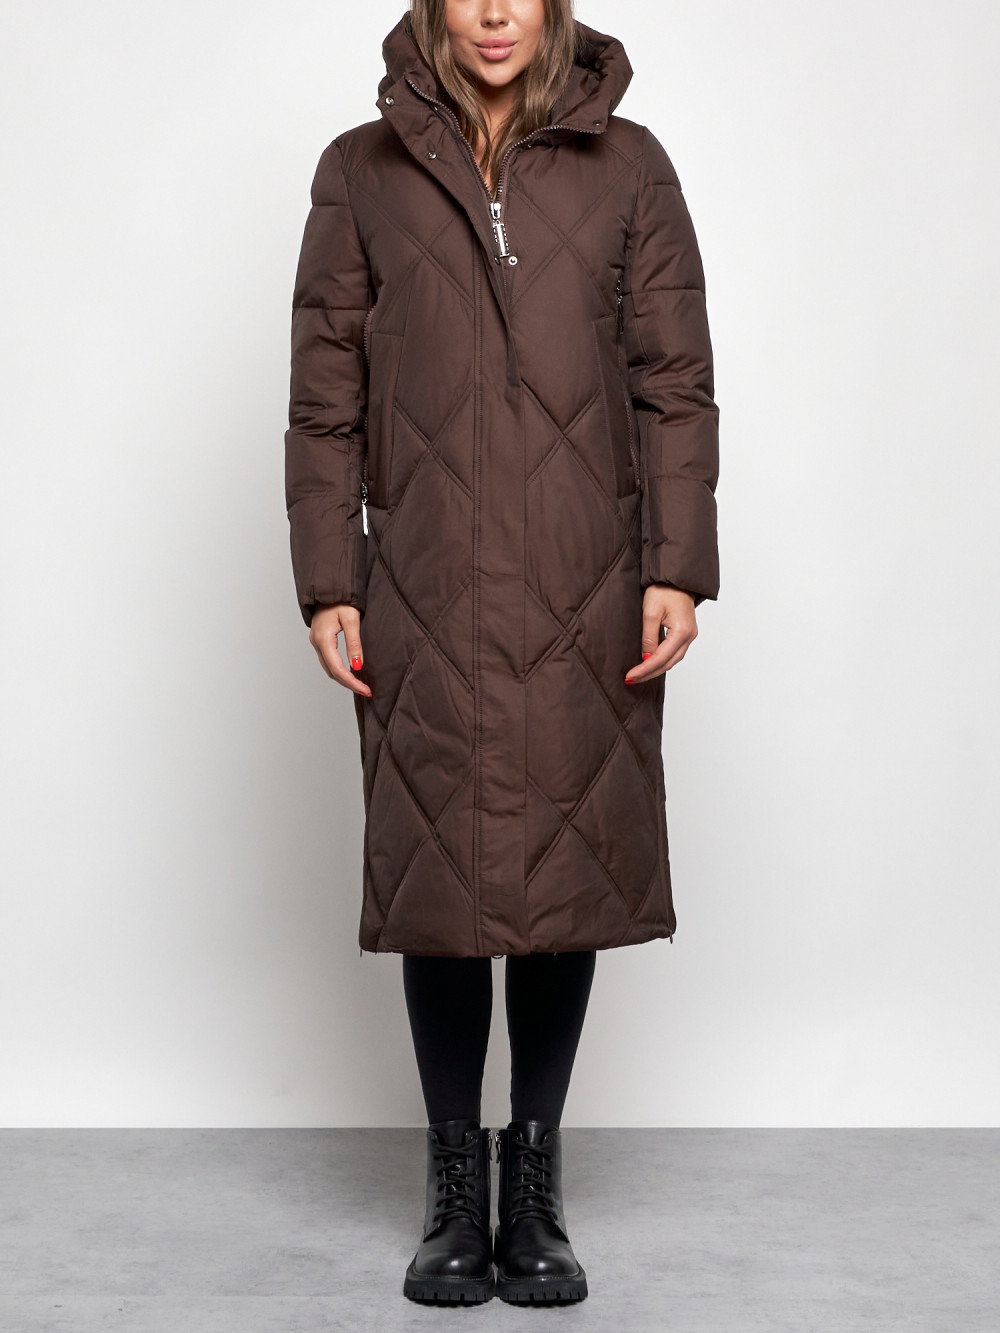 Пальто женское NoBrand AD52358 коричневое M